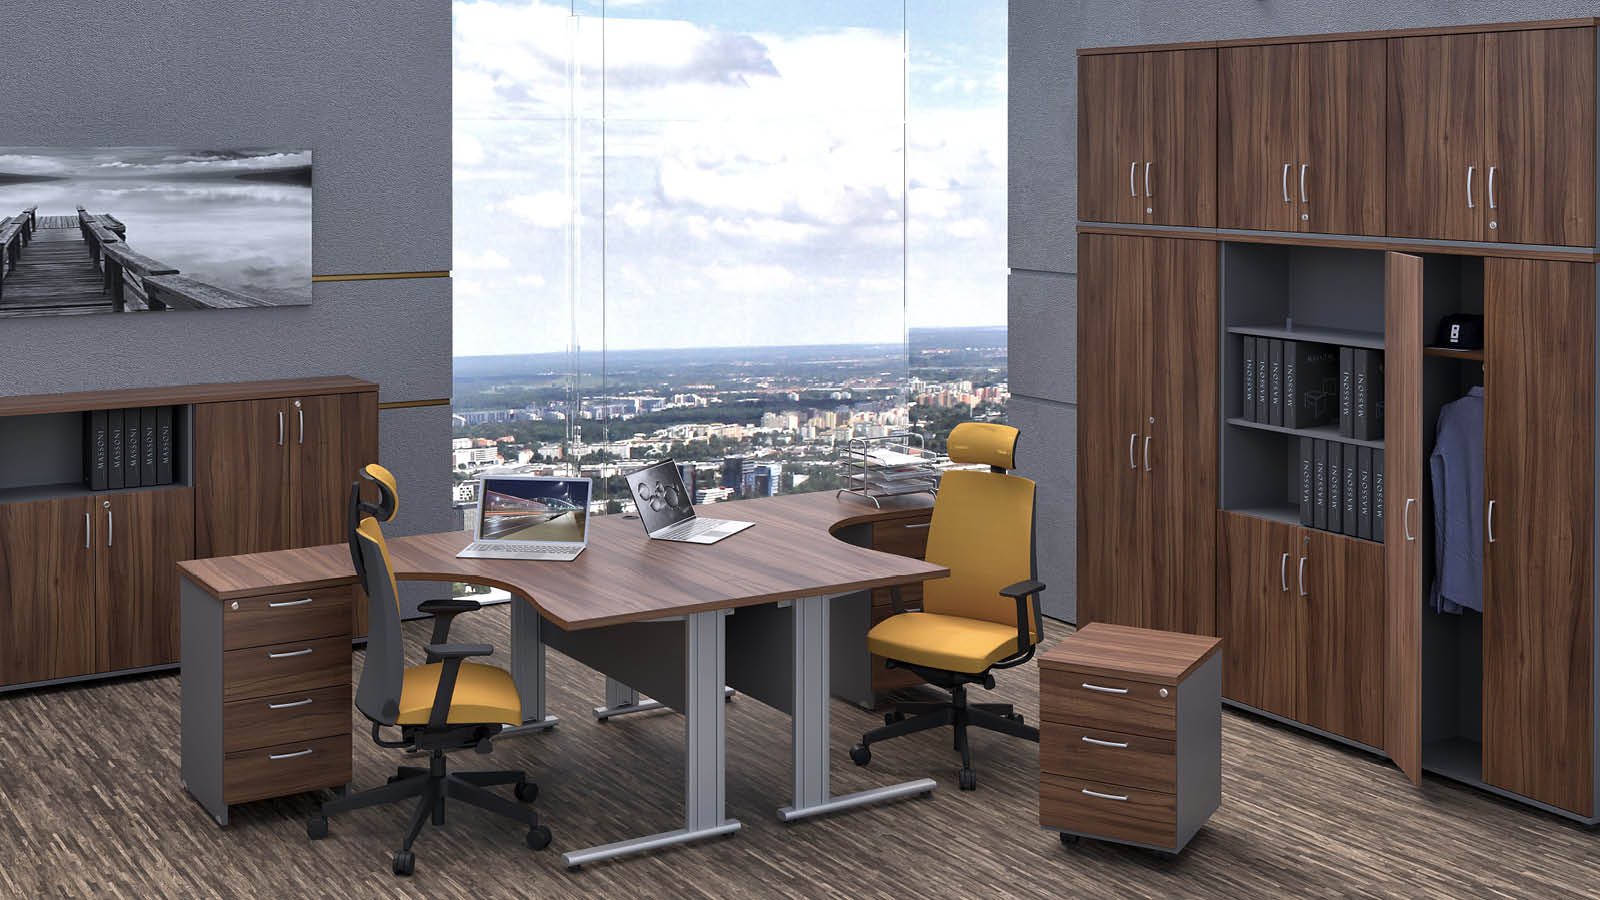 Meble biurowe (orzech) ustawione w pomieszczeniu - biurka narożne na stelażu metalowym, szafy aktowe oraz krzesła obrotowe.